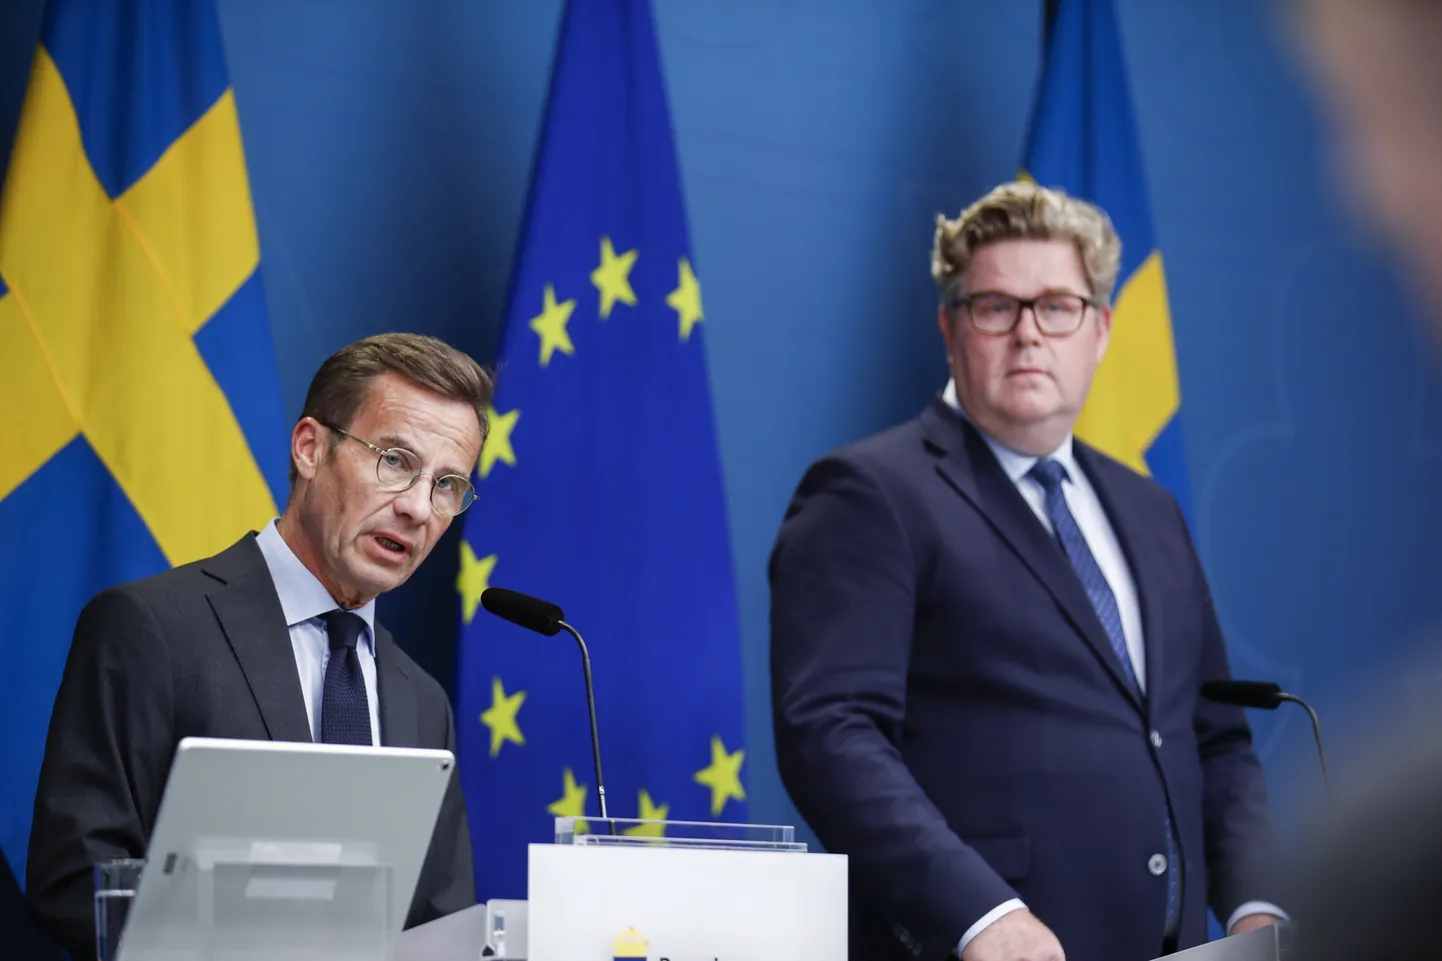 Rootsi peaminister Ulf Kristersson kõneles teisipäeval julgeolekuteemalisel pressikonverentsil, millest võttis osa ka justiitsminister Gunnar Strömmer